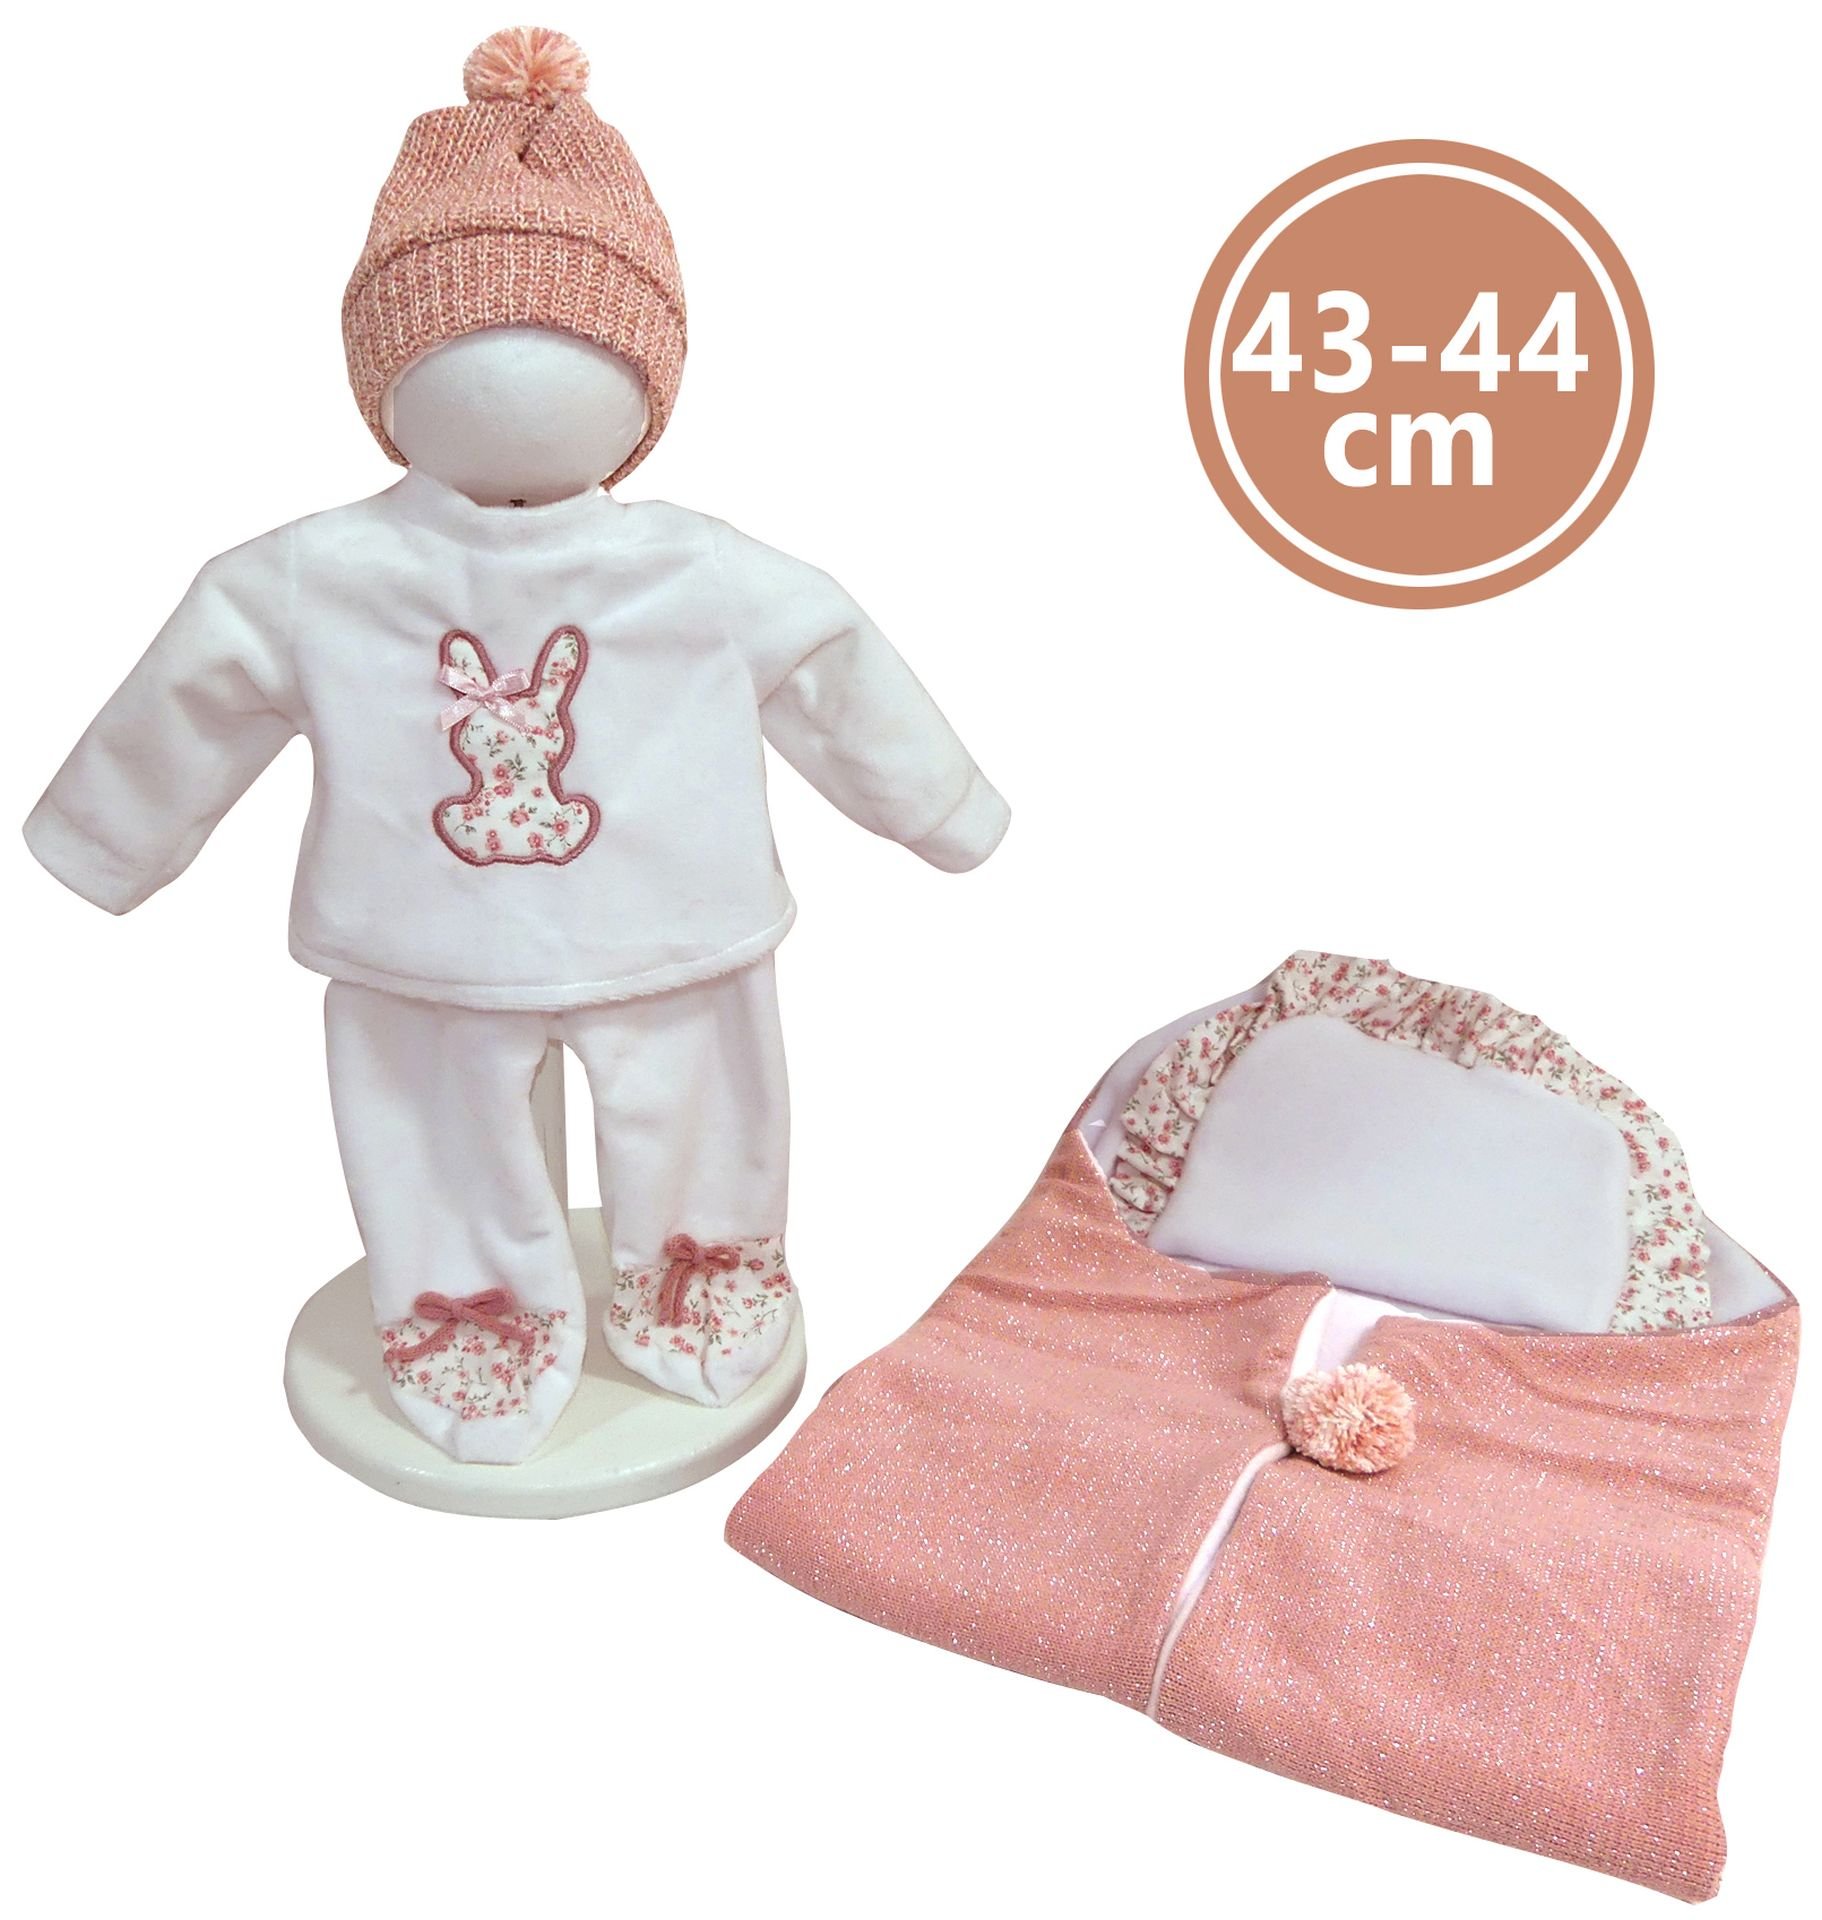 Levně Llorens M844-44 obleček pro panenku miminko NEW BORN velikosti 43-44 cm